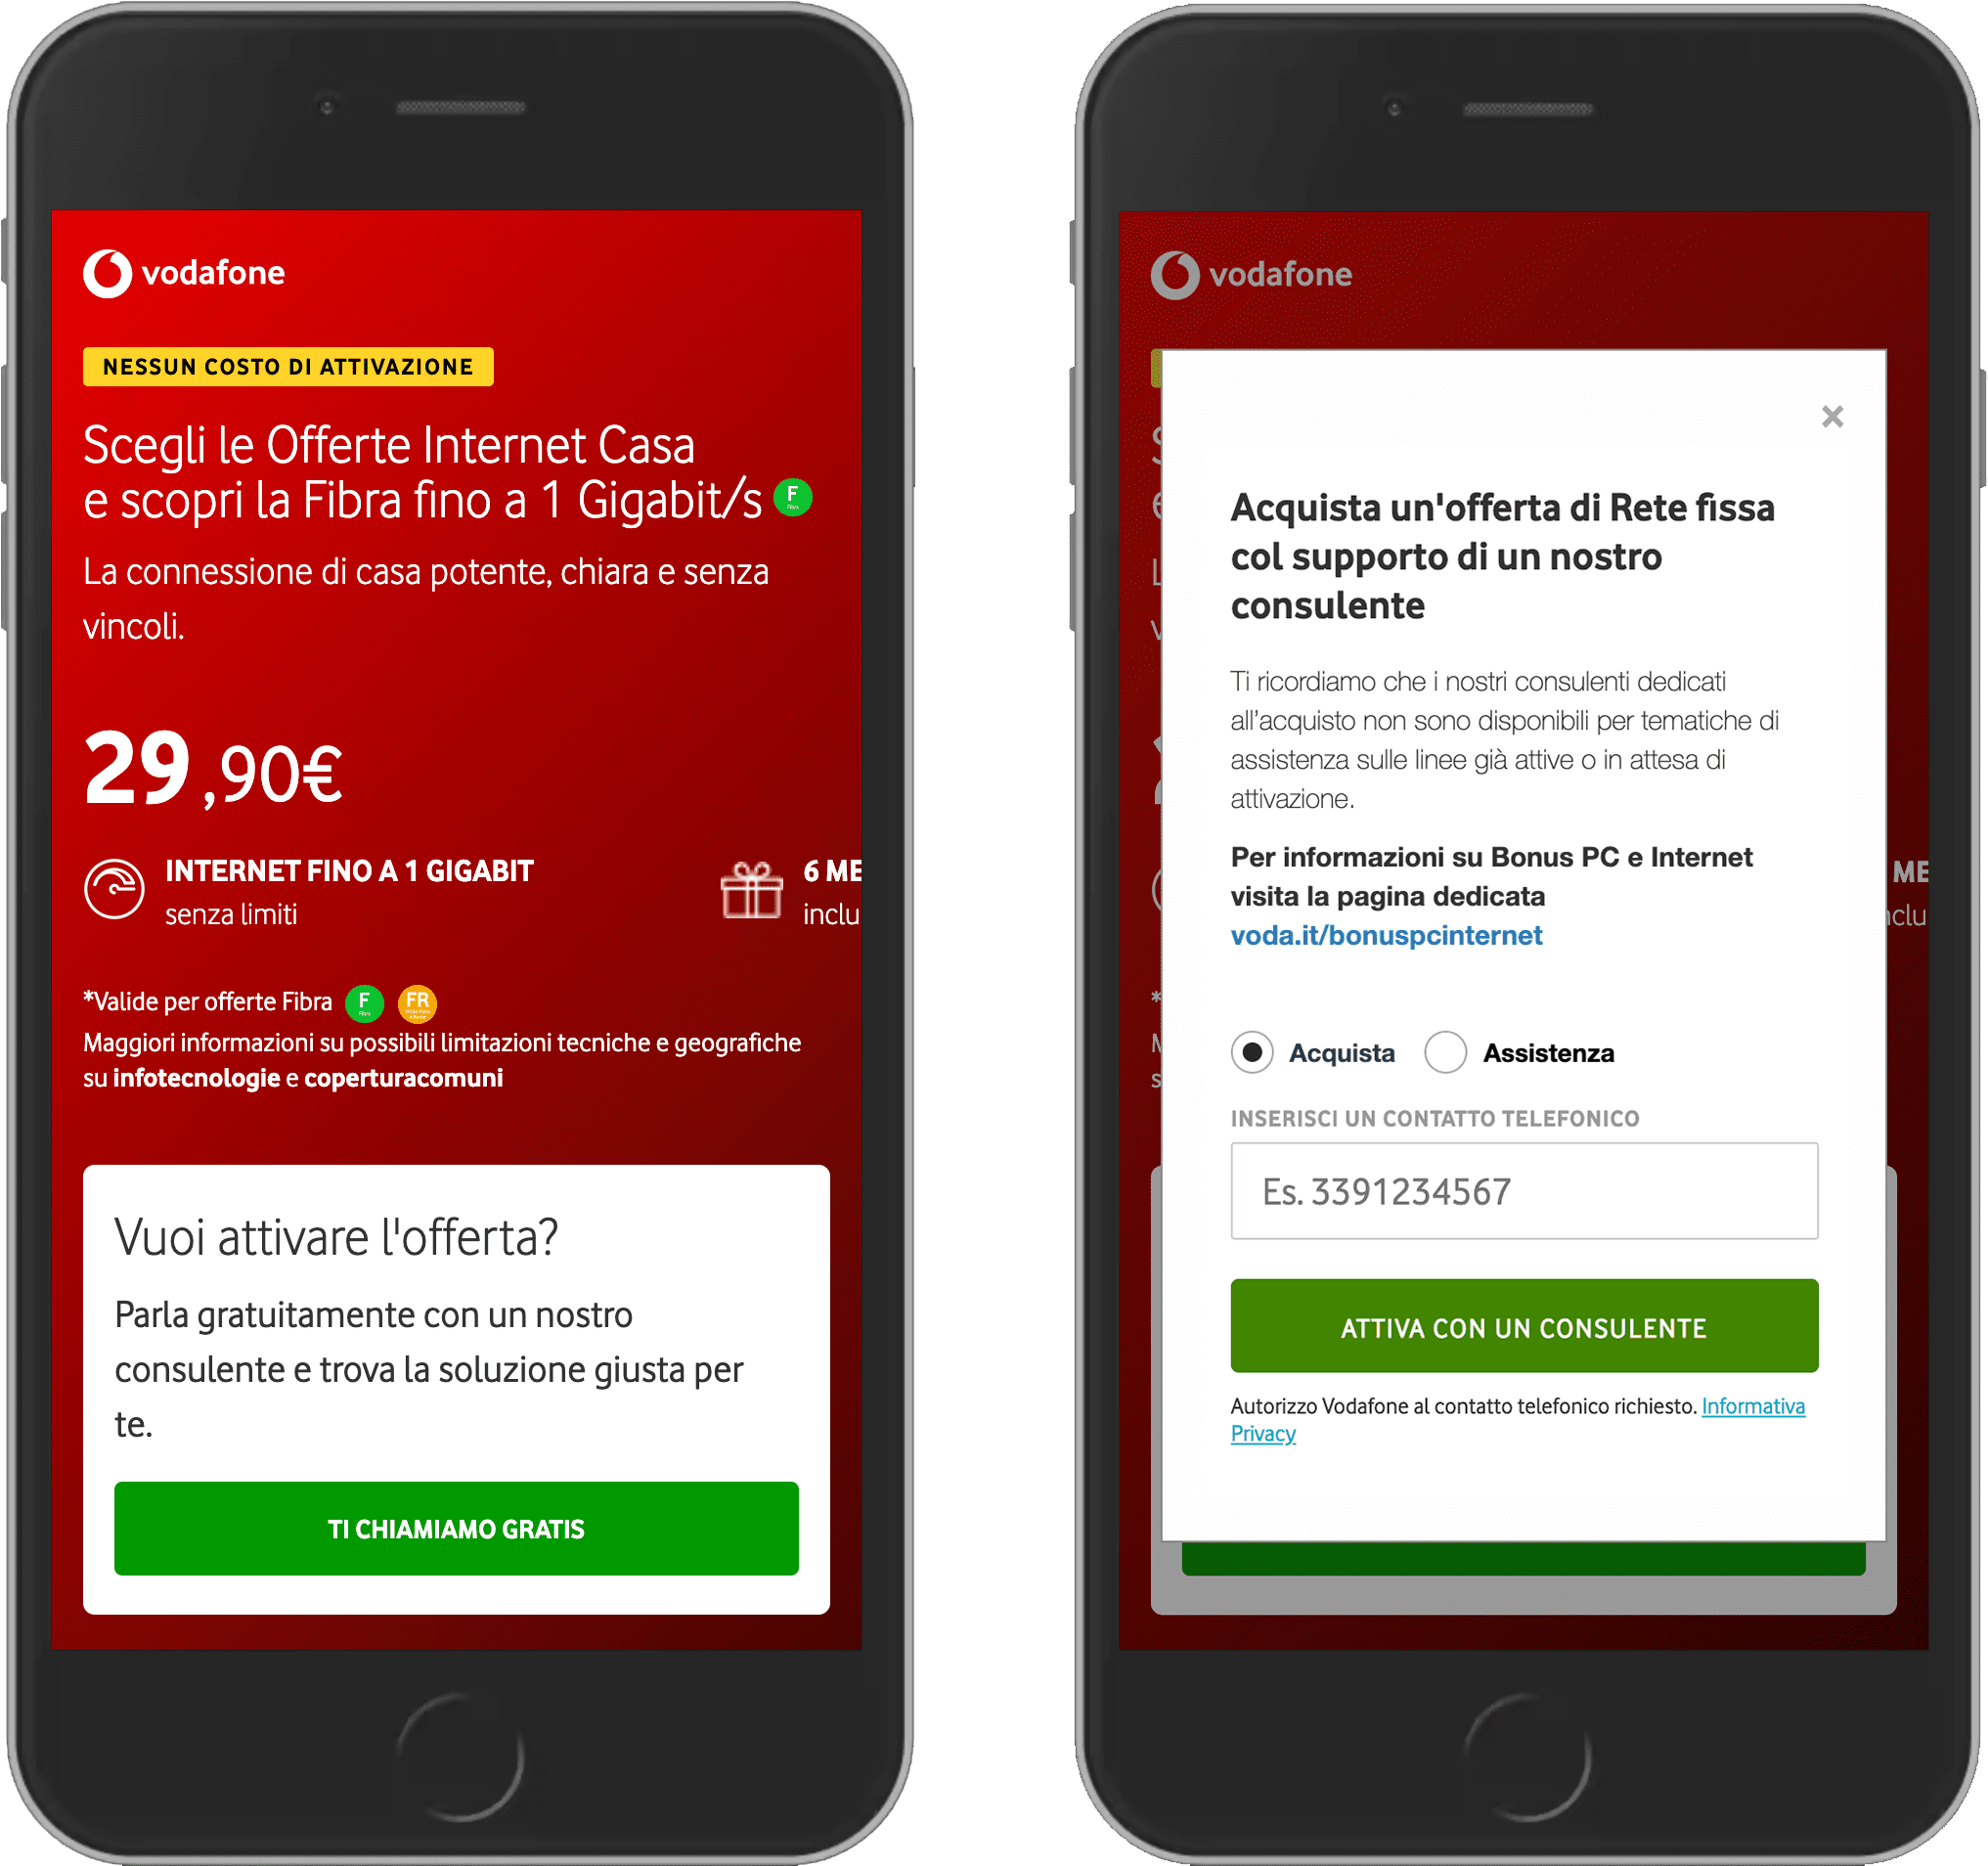 Vodafone のウェブサイトのスクリーンショット 2 枚。